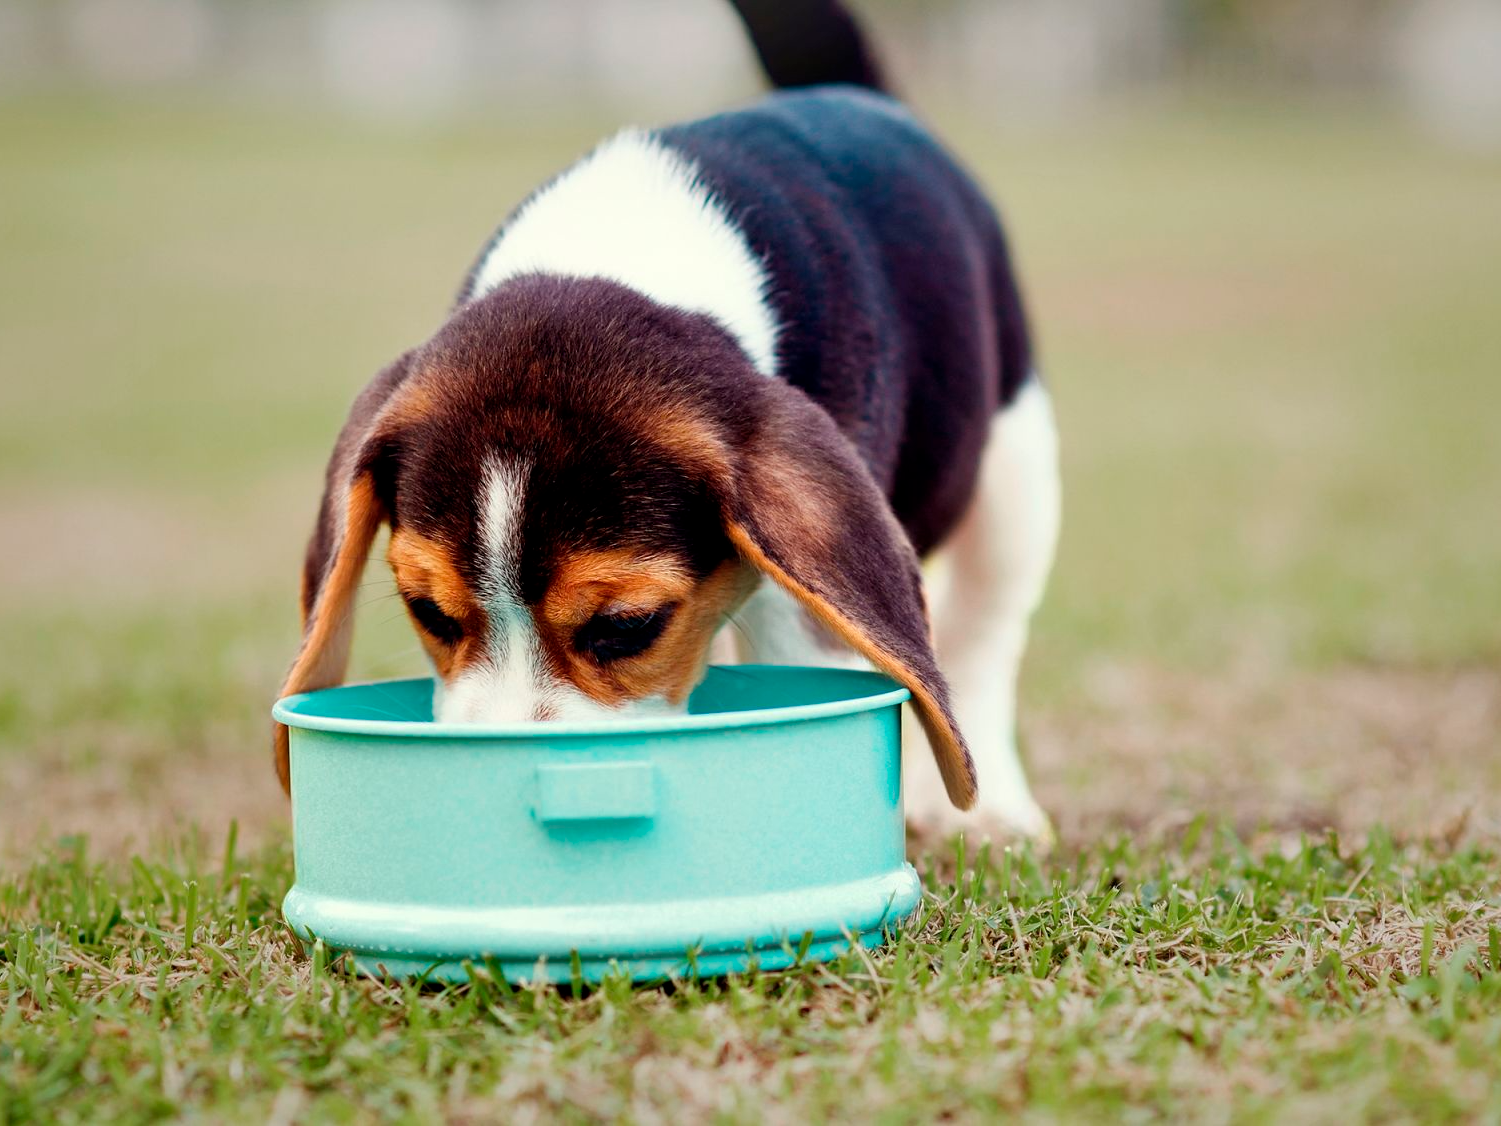 Beagle puppy eet uit een voedingsbakje buiten